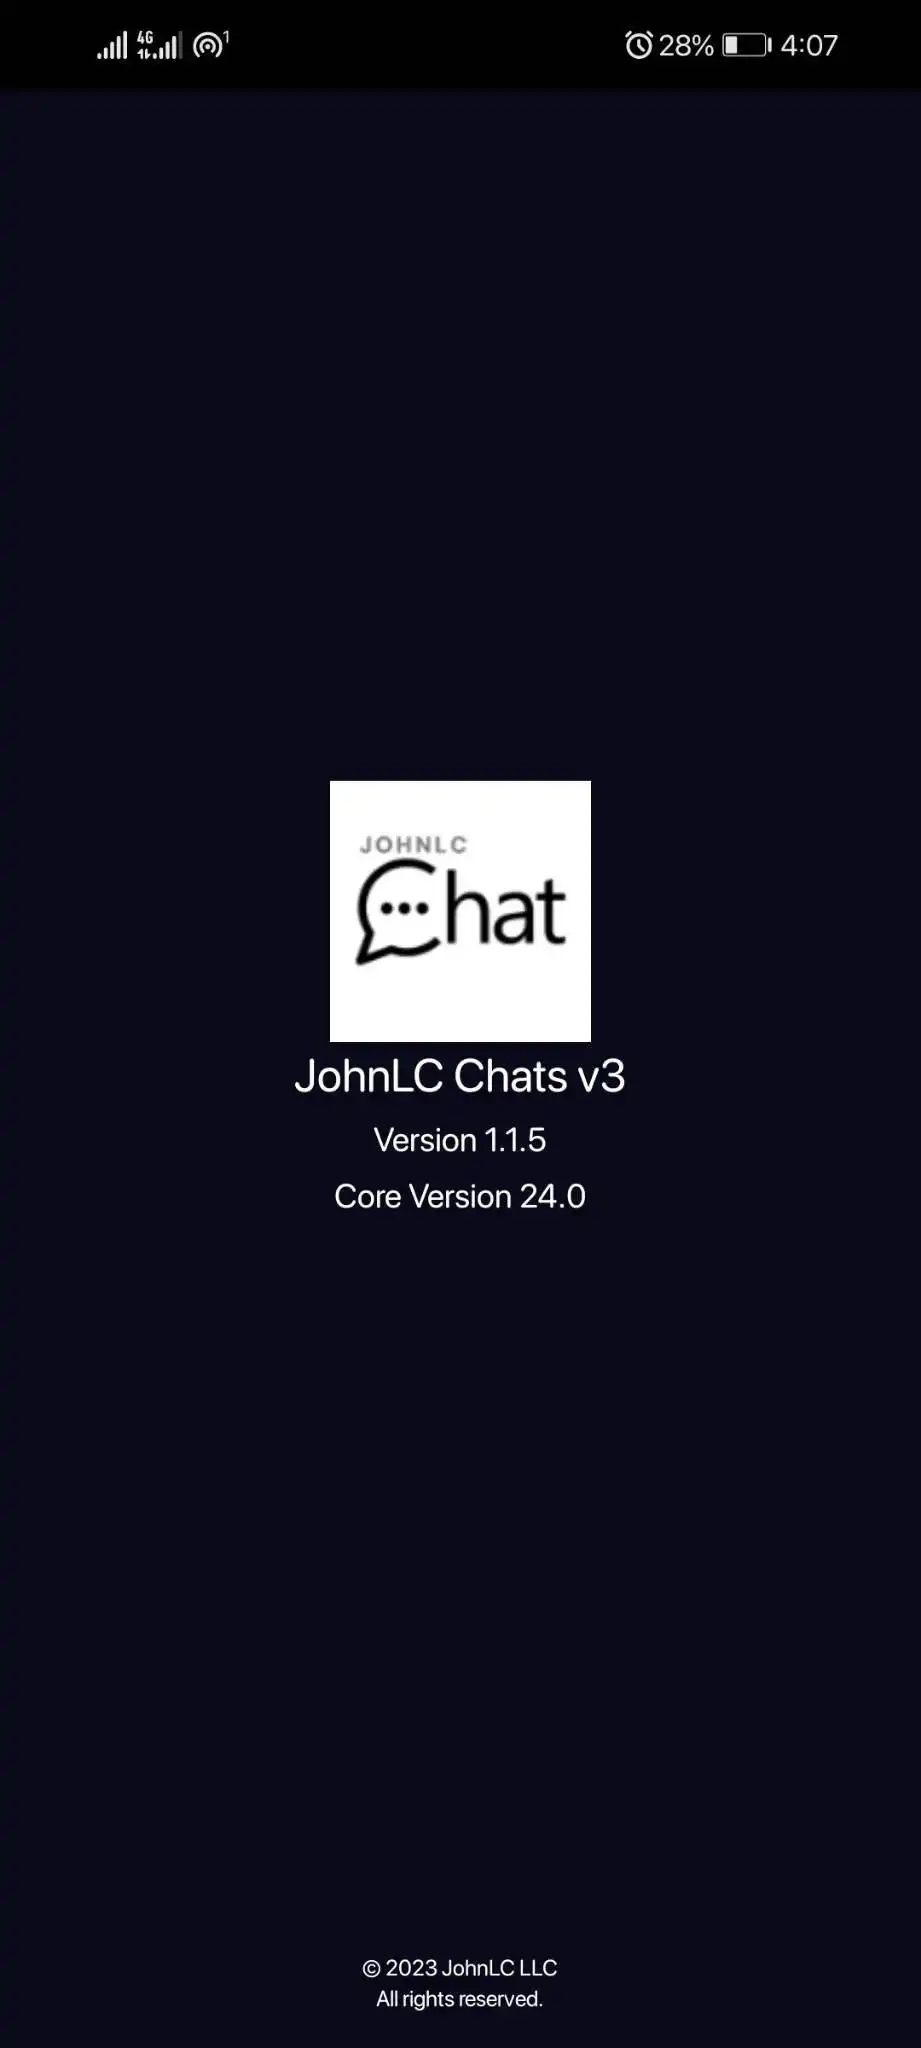 הורד את כלי האינטרנט או אפליקציית האינטרנט JohnLC Chats v3